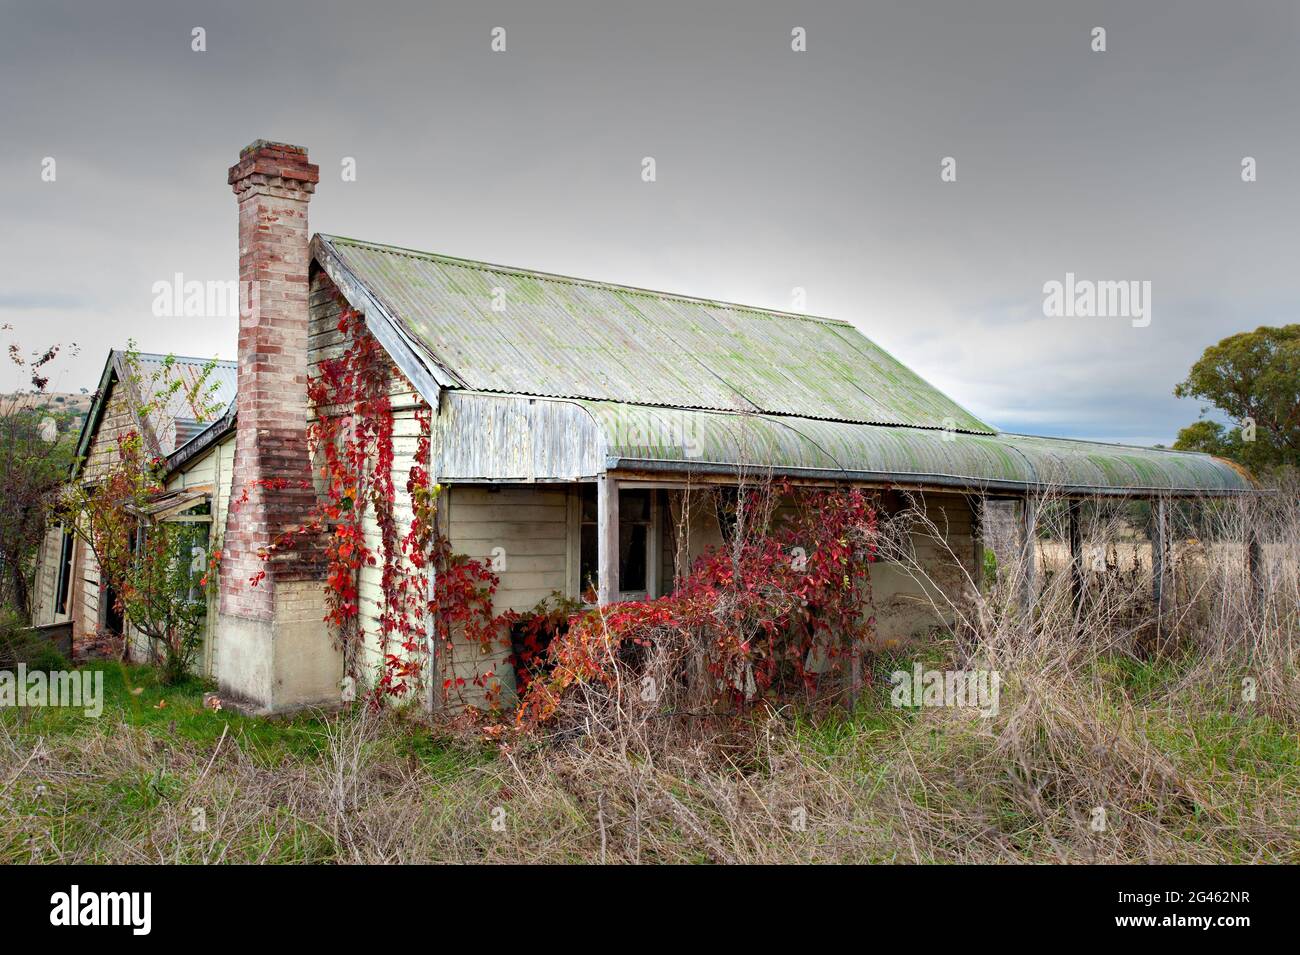 Los estragos del tiempo pesan pesadamente en una casa de campo familiar muy querida y llena de memoria en la región de New England Tablelands de Nueva Gales del Sur, Australia. Foto de stock